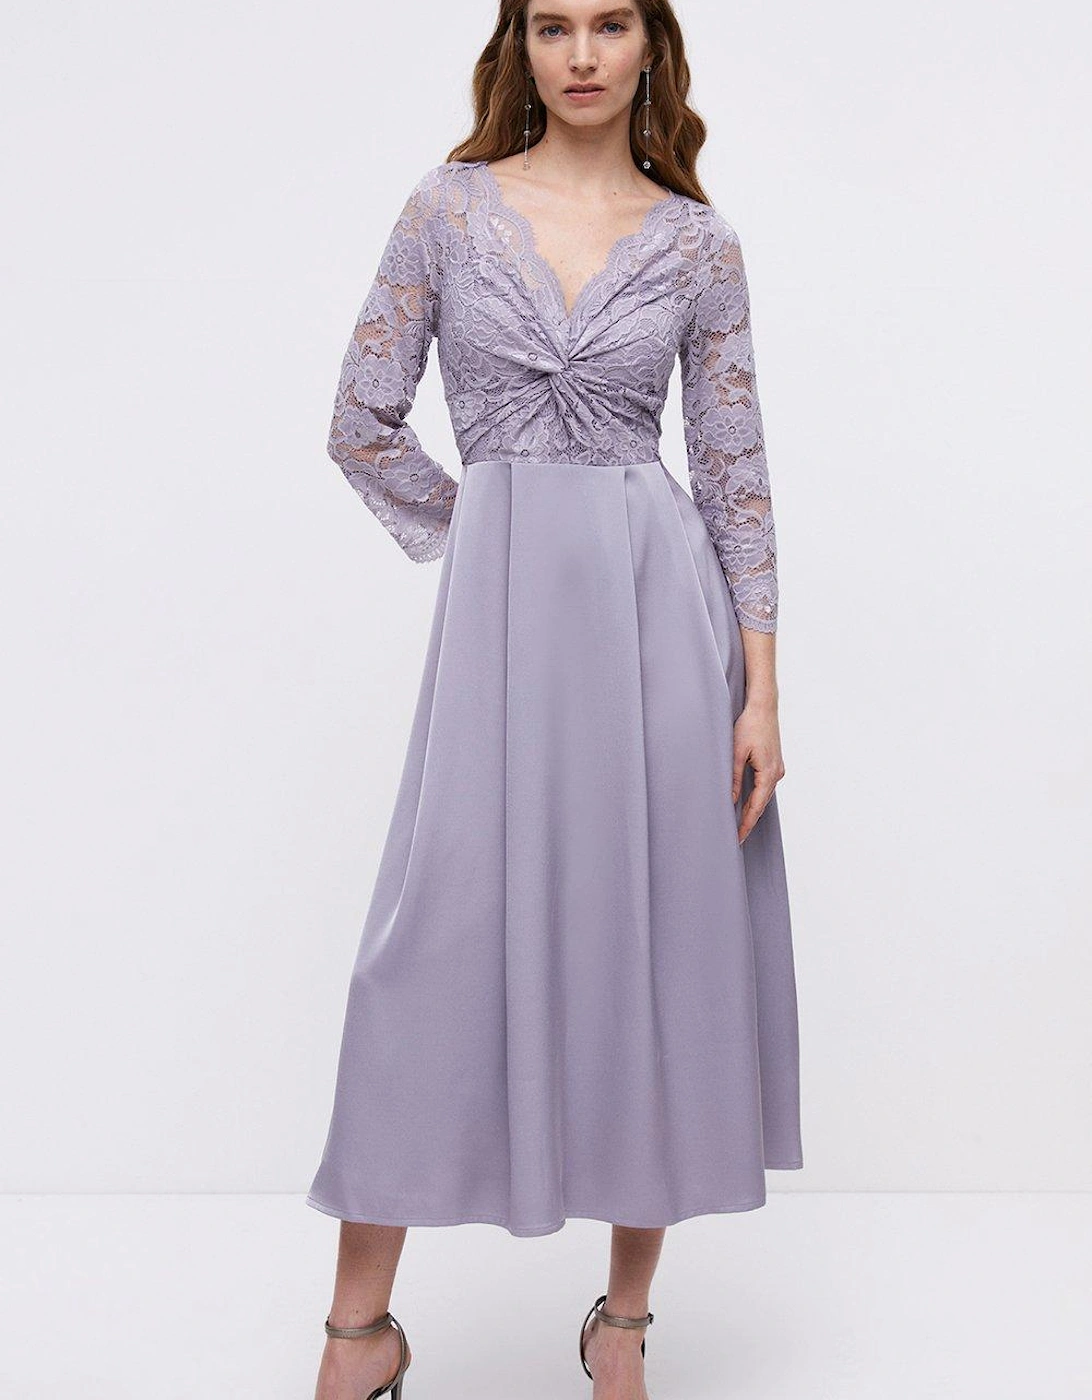 Lace Twist Top Satin Skirt Midi Dress, 6 of 5